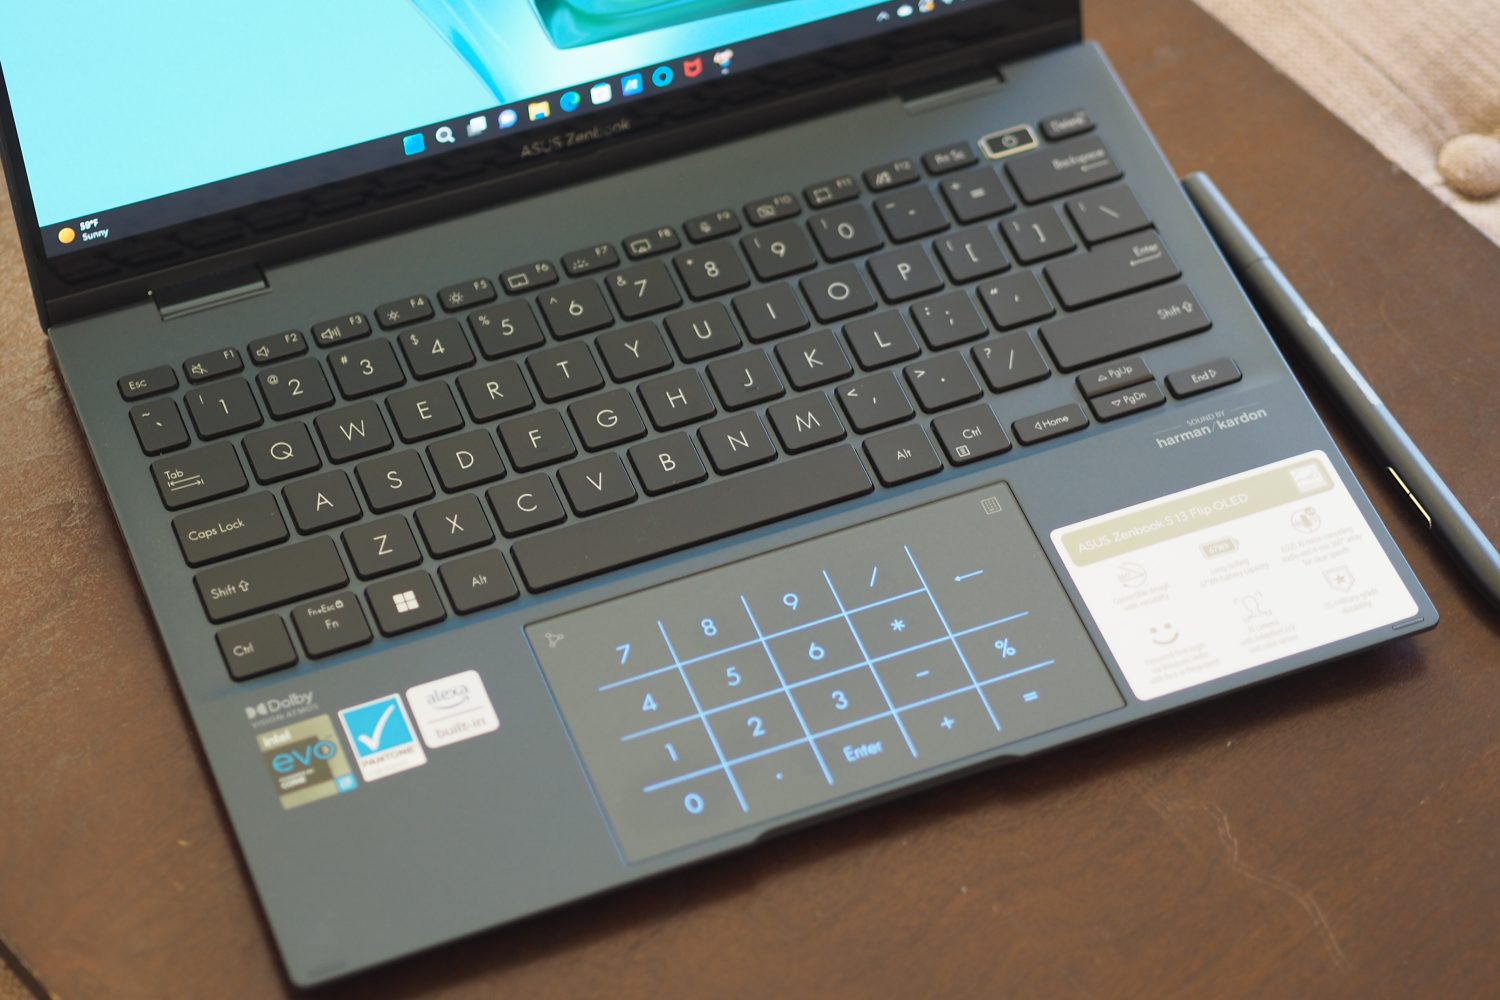 Asus ZenBook S 13 Vista de arriba hacia abajo que muestra el teclado y el panel táctil.